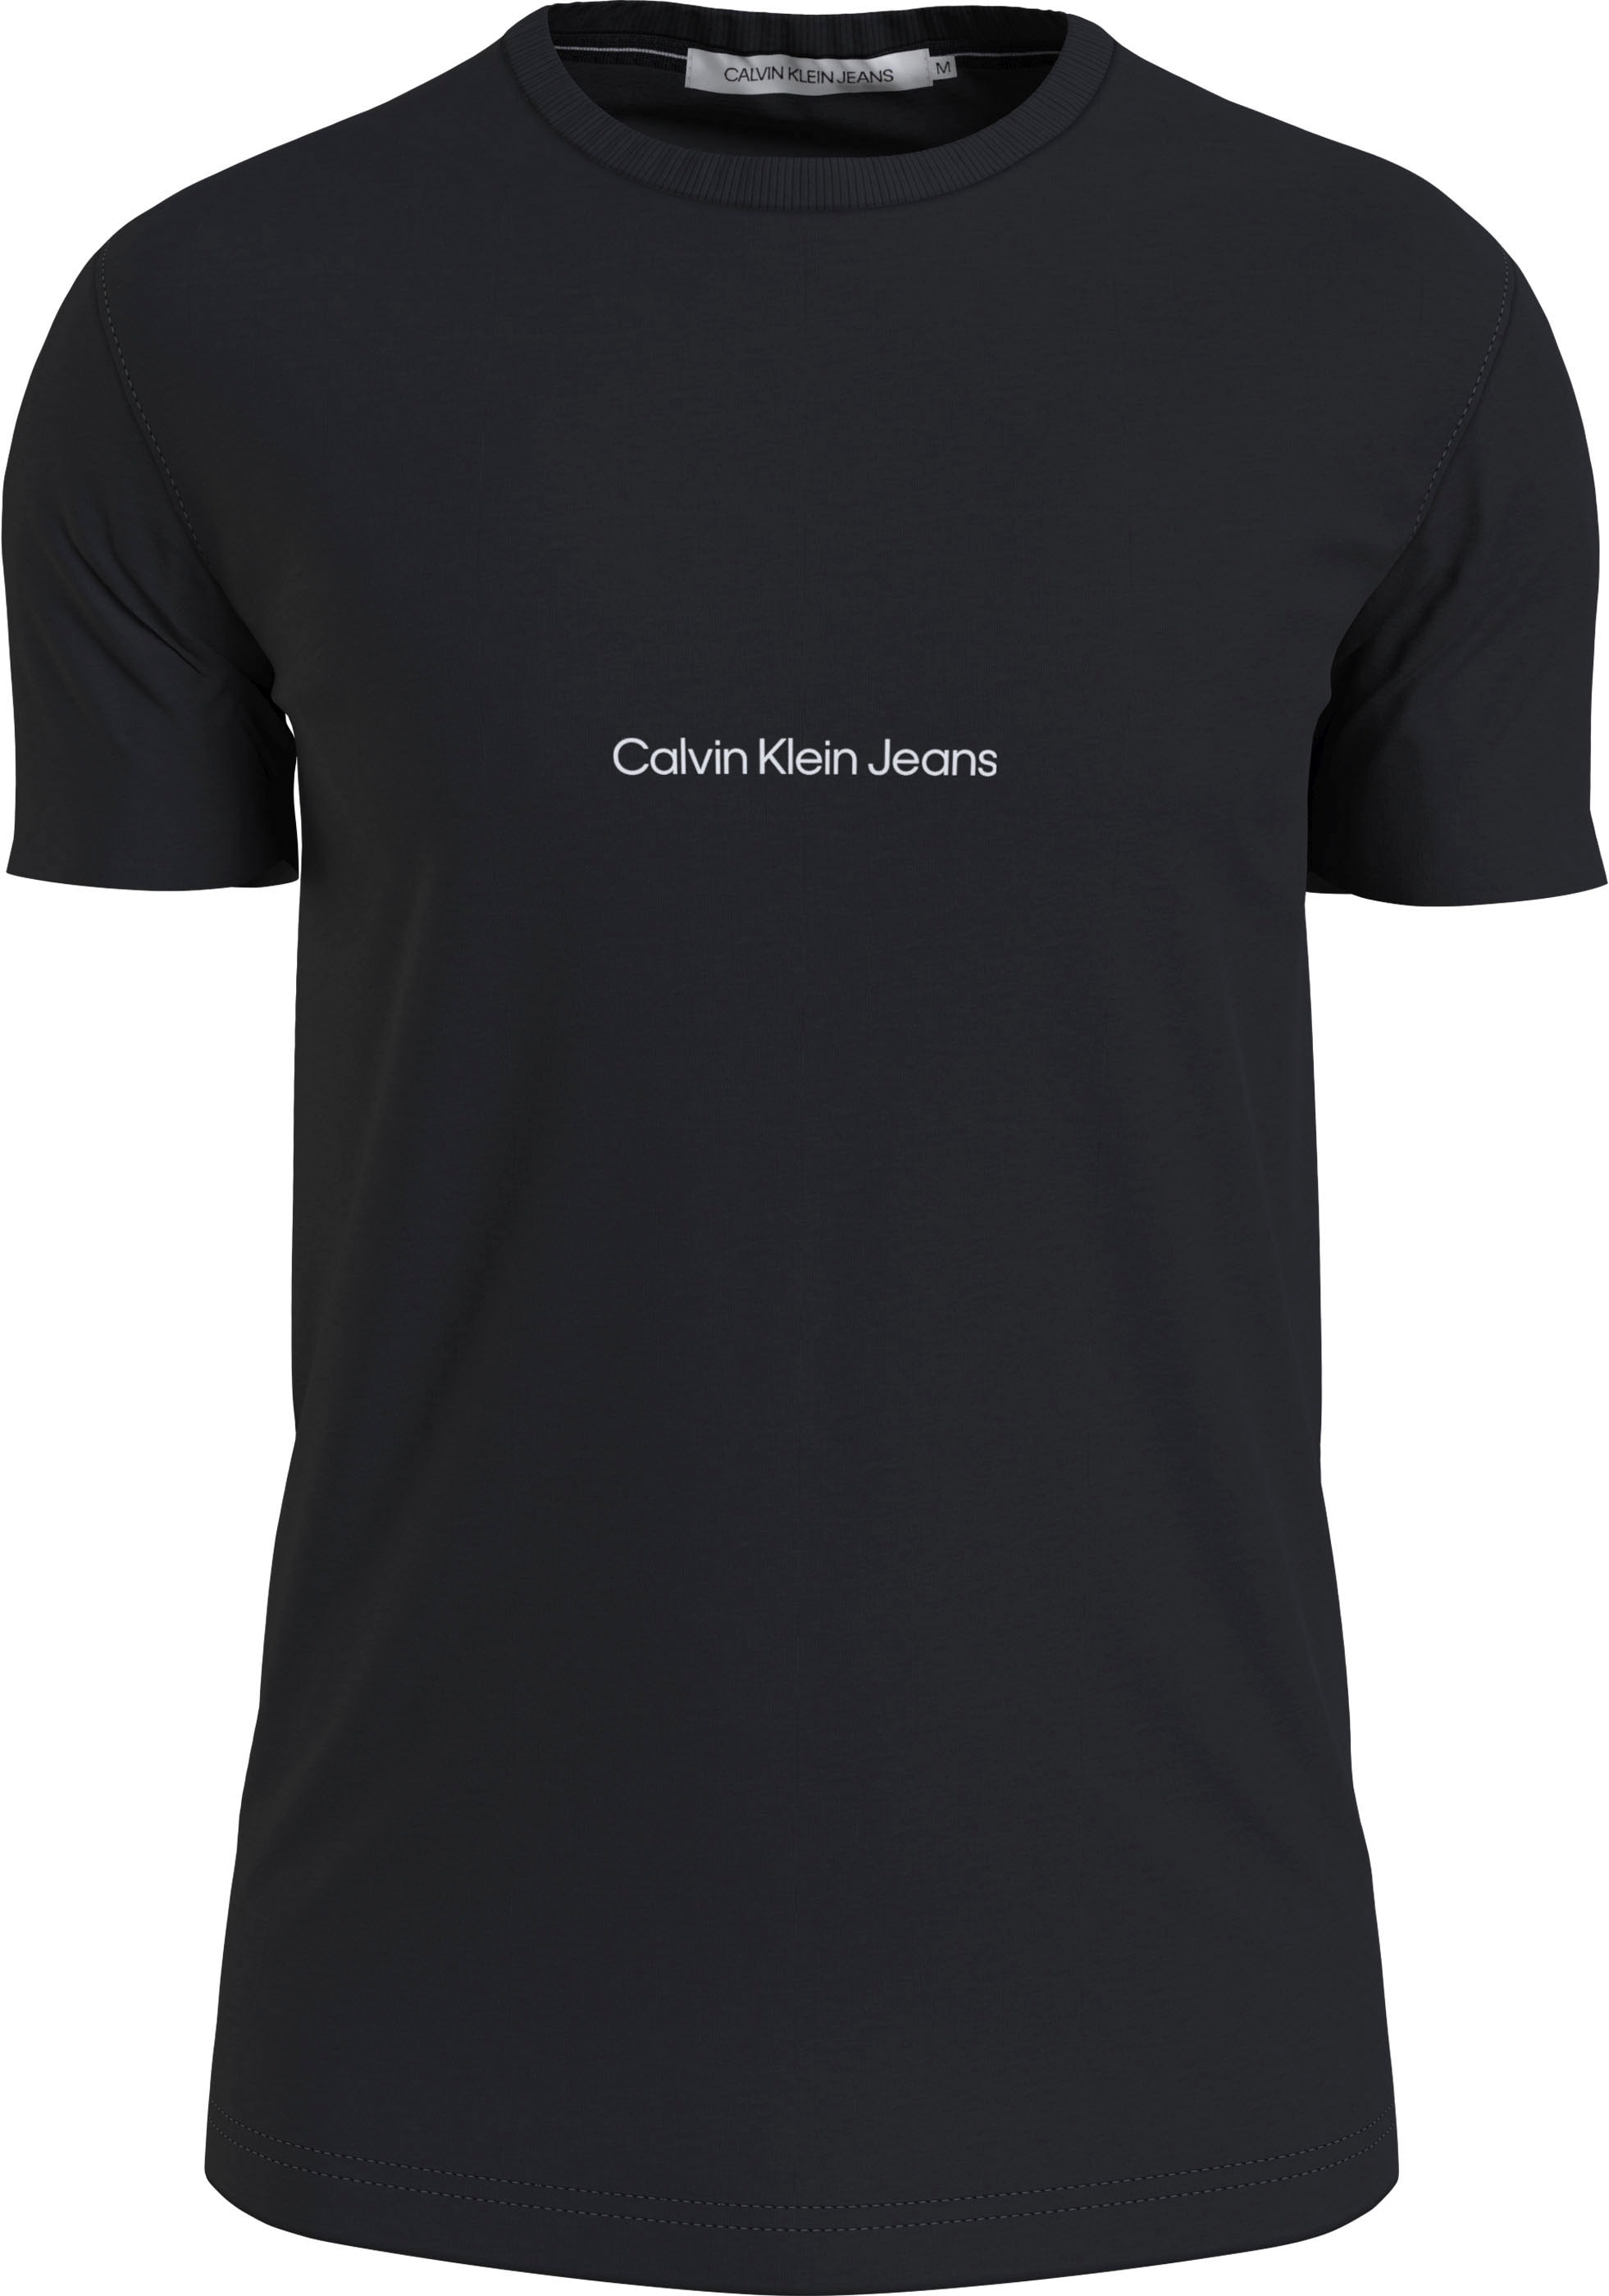 Jeans Jeans mit Klein Calvin kaufen Calvin Klein Kurzarmshirt, Logoprint